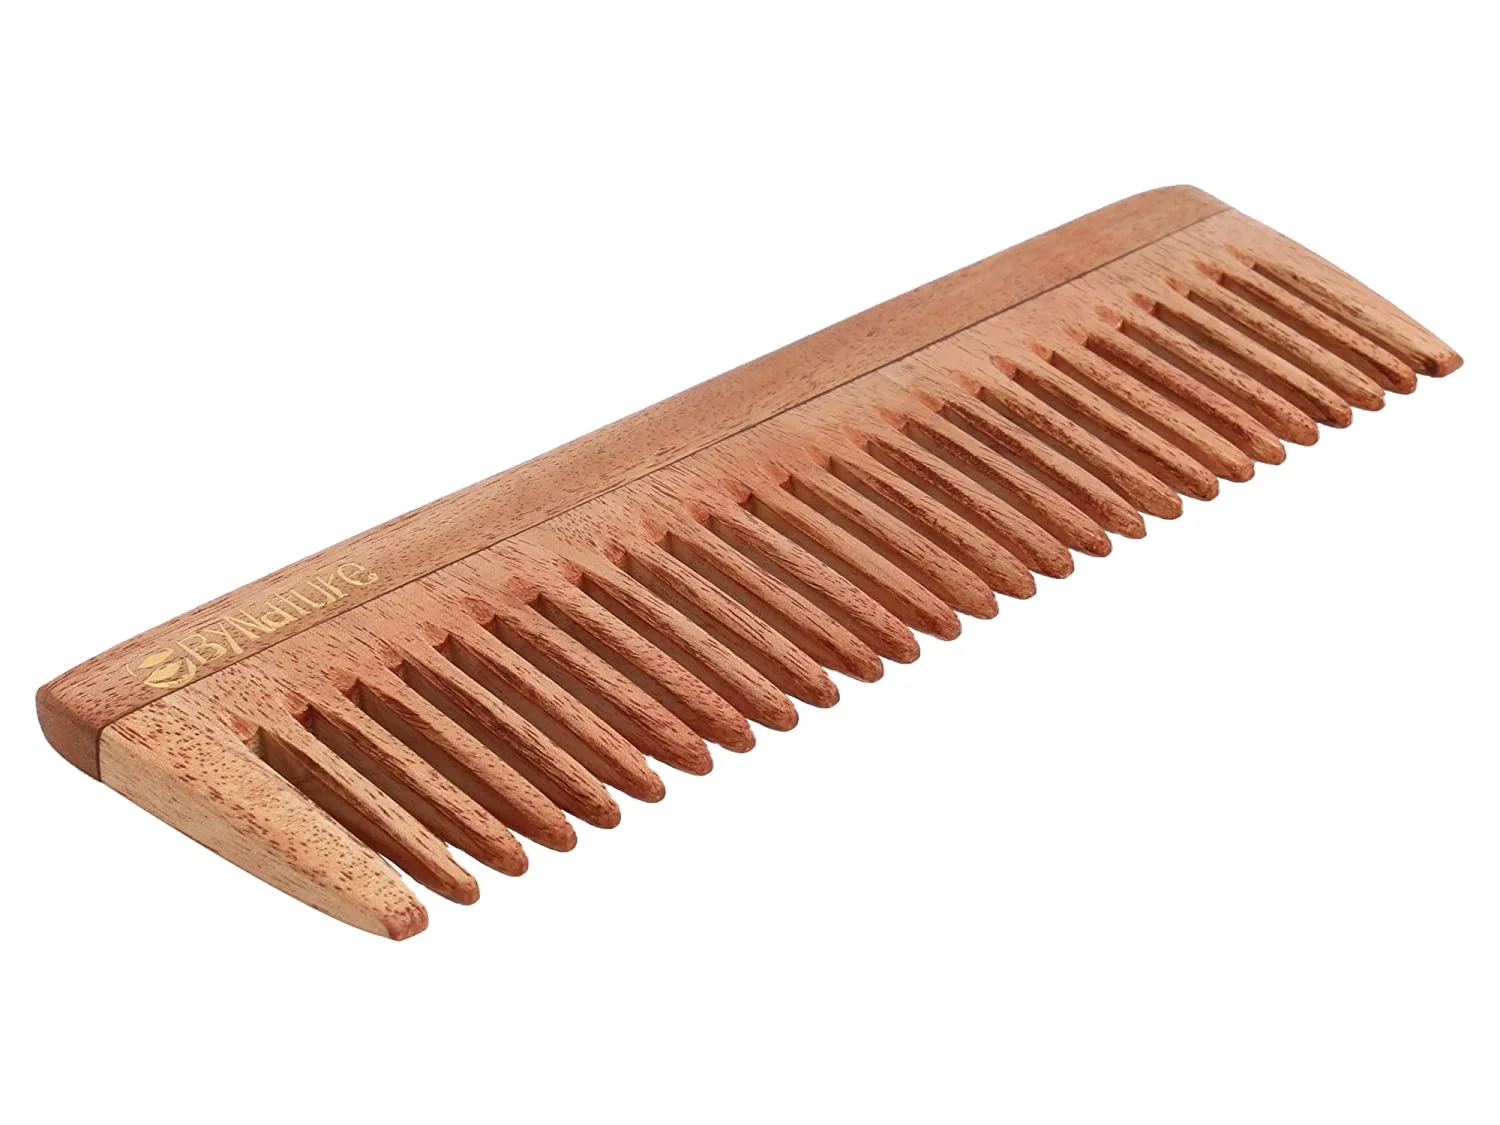 Wood Comb 29.5x25.6. Neem Comb. Расчетса made Spain. Wood Comb.